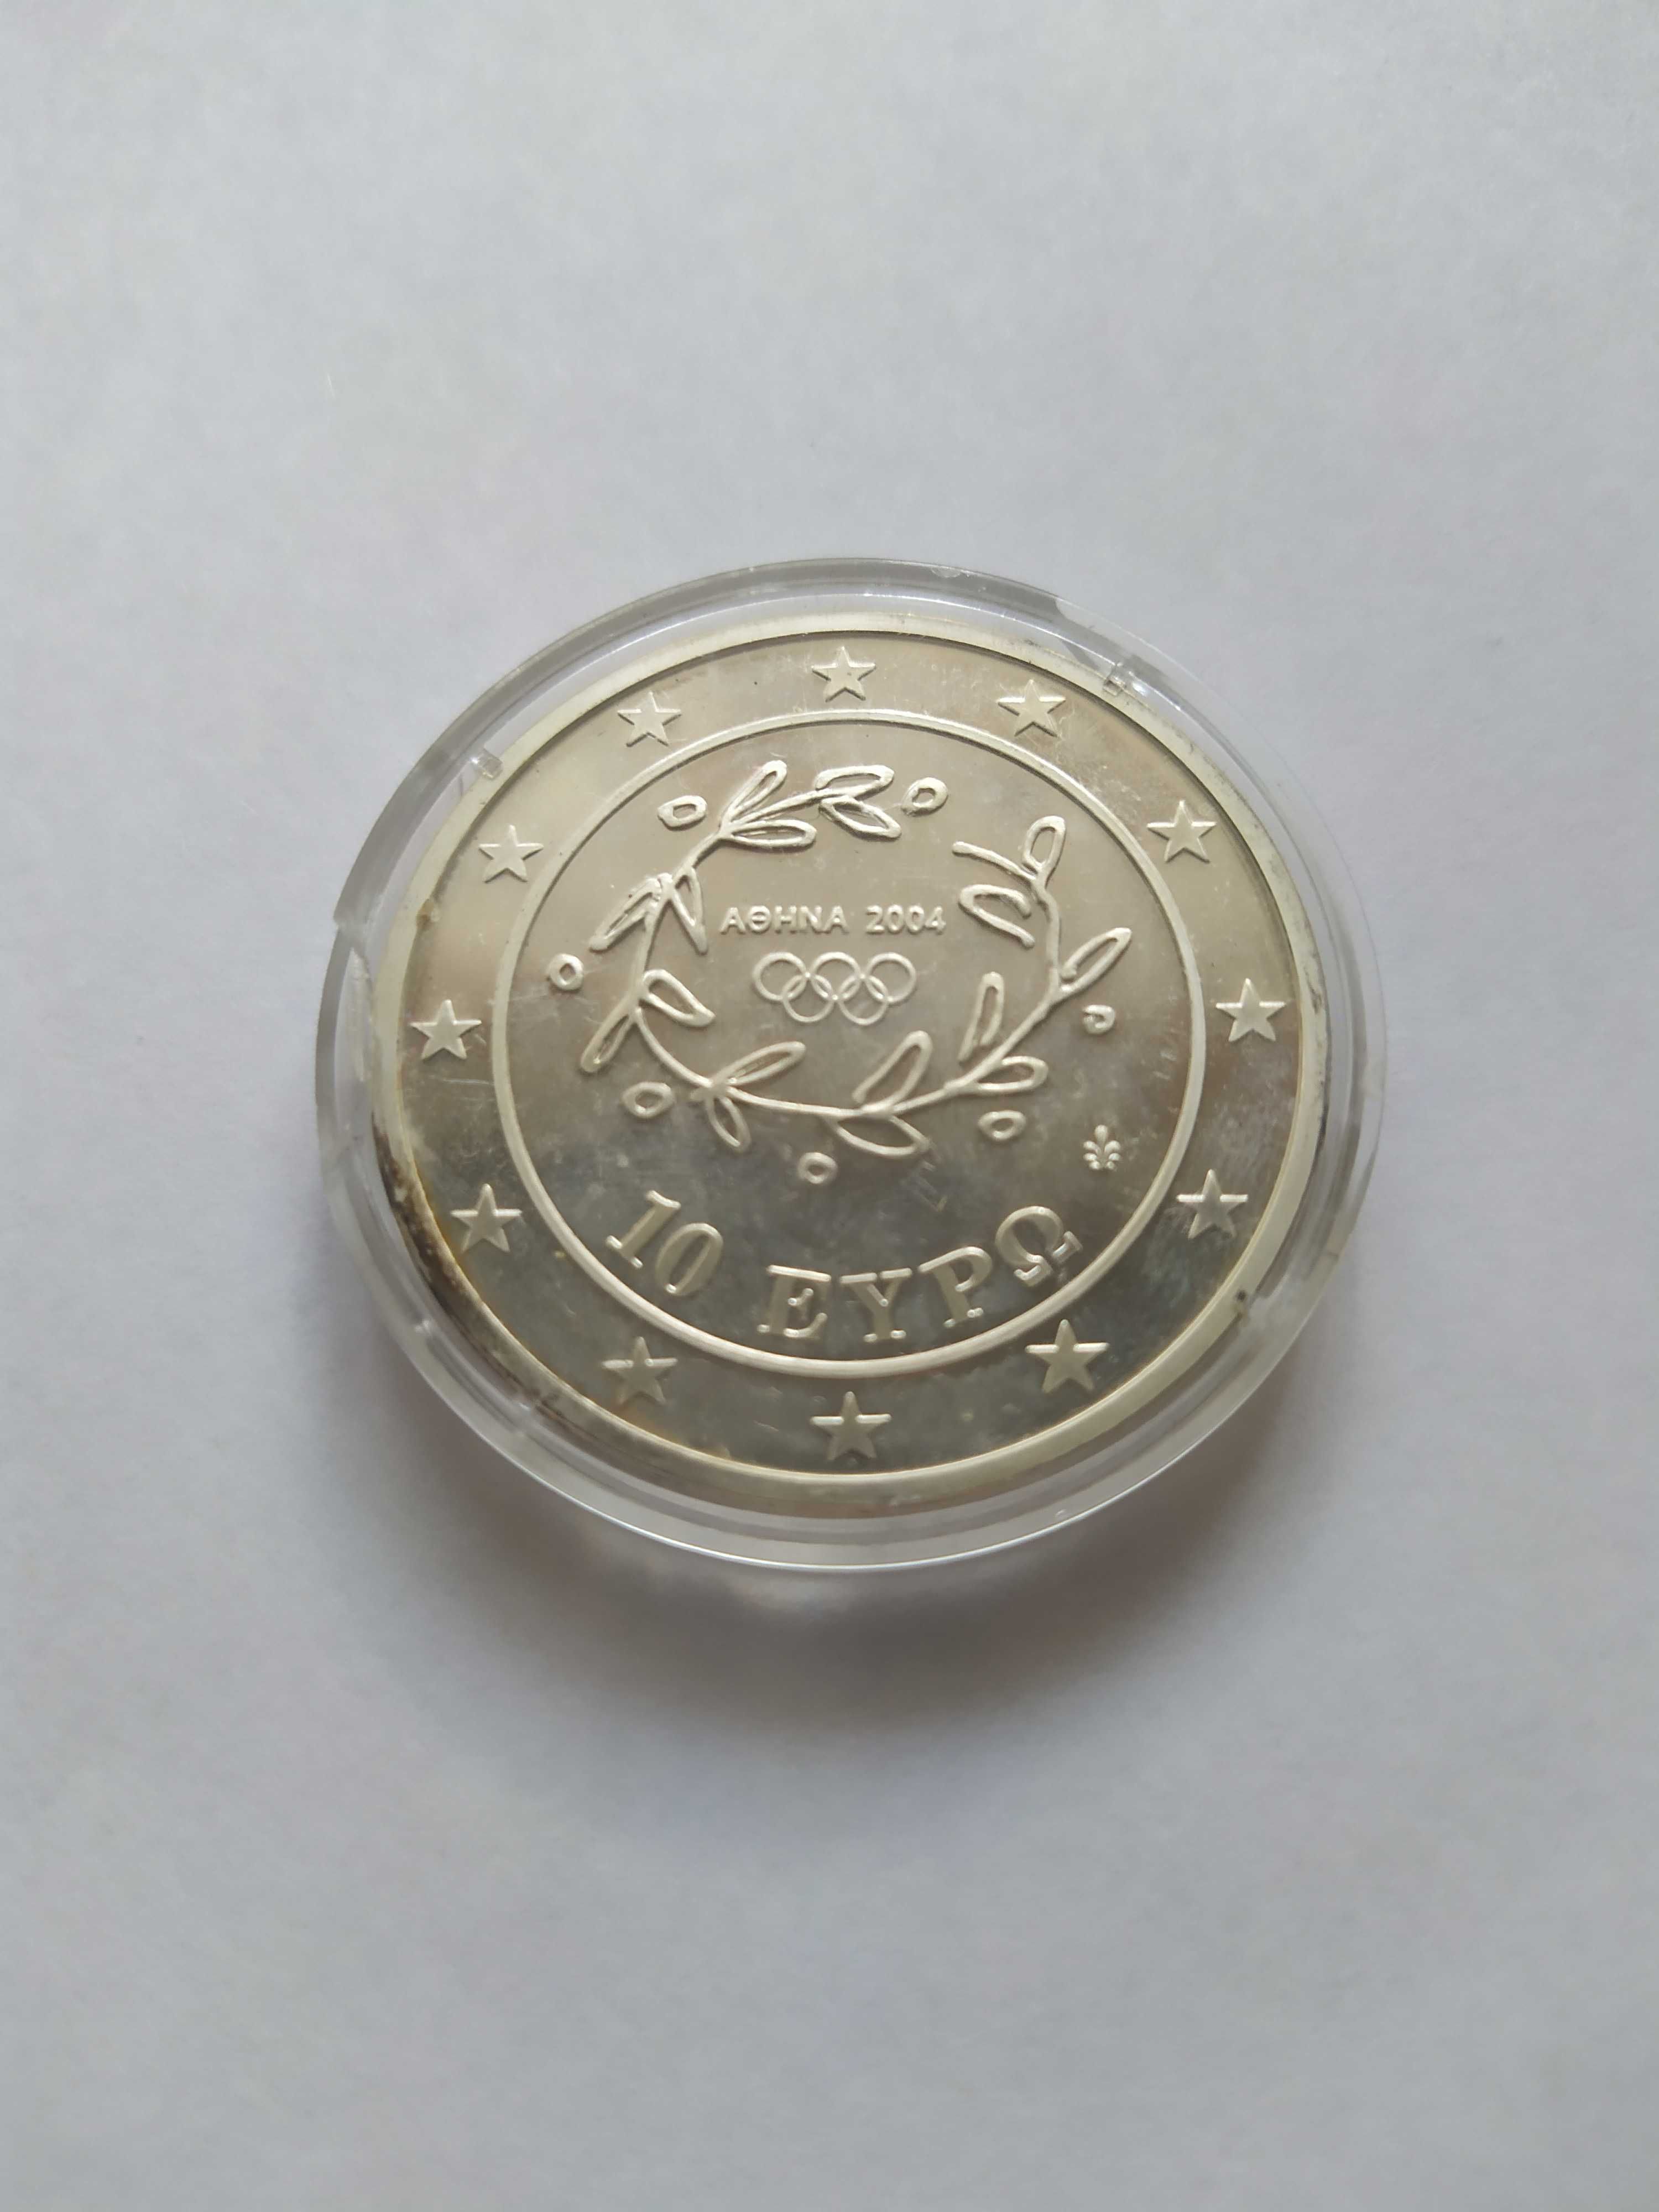 срiбна монета 10 Евро " Лiтнi Олiмпiйськi iгри 2004 року в Афiнах"